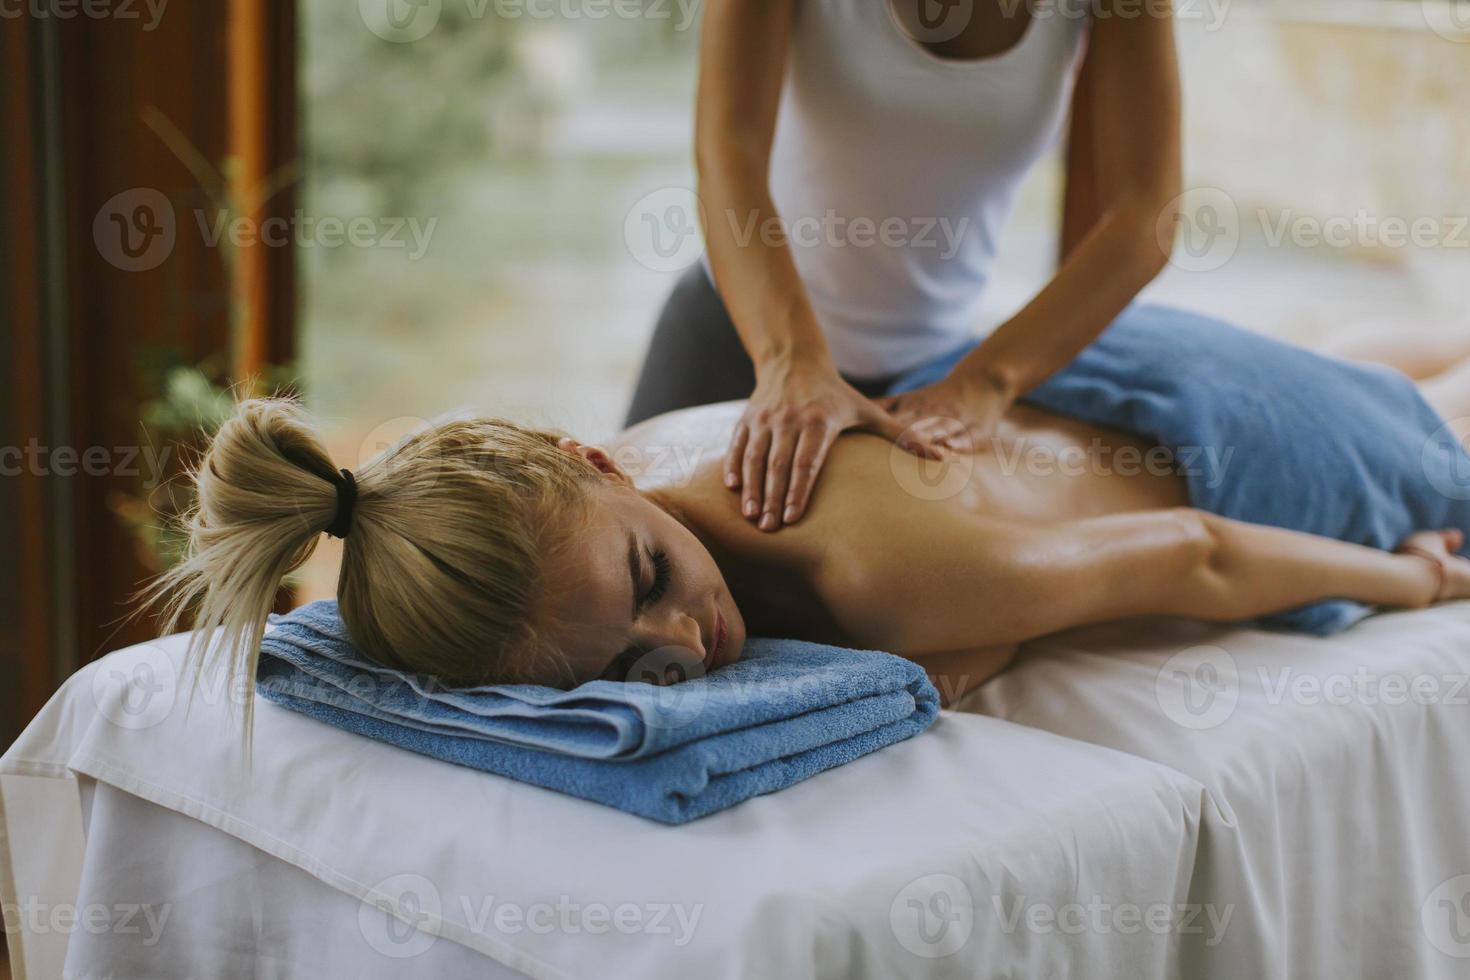 bella giovane donna sdraiata e con massaggio alla schiena nel salone spa durante la stagione invernale foto